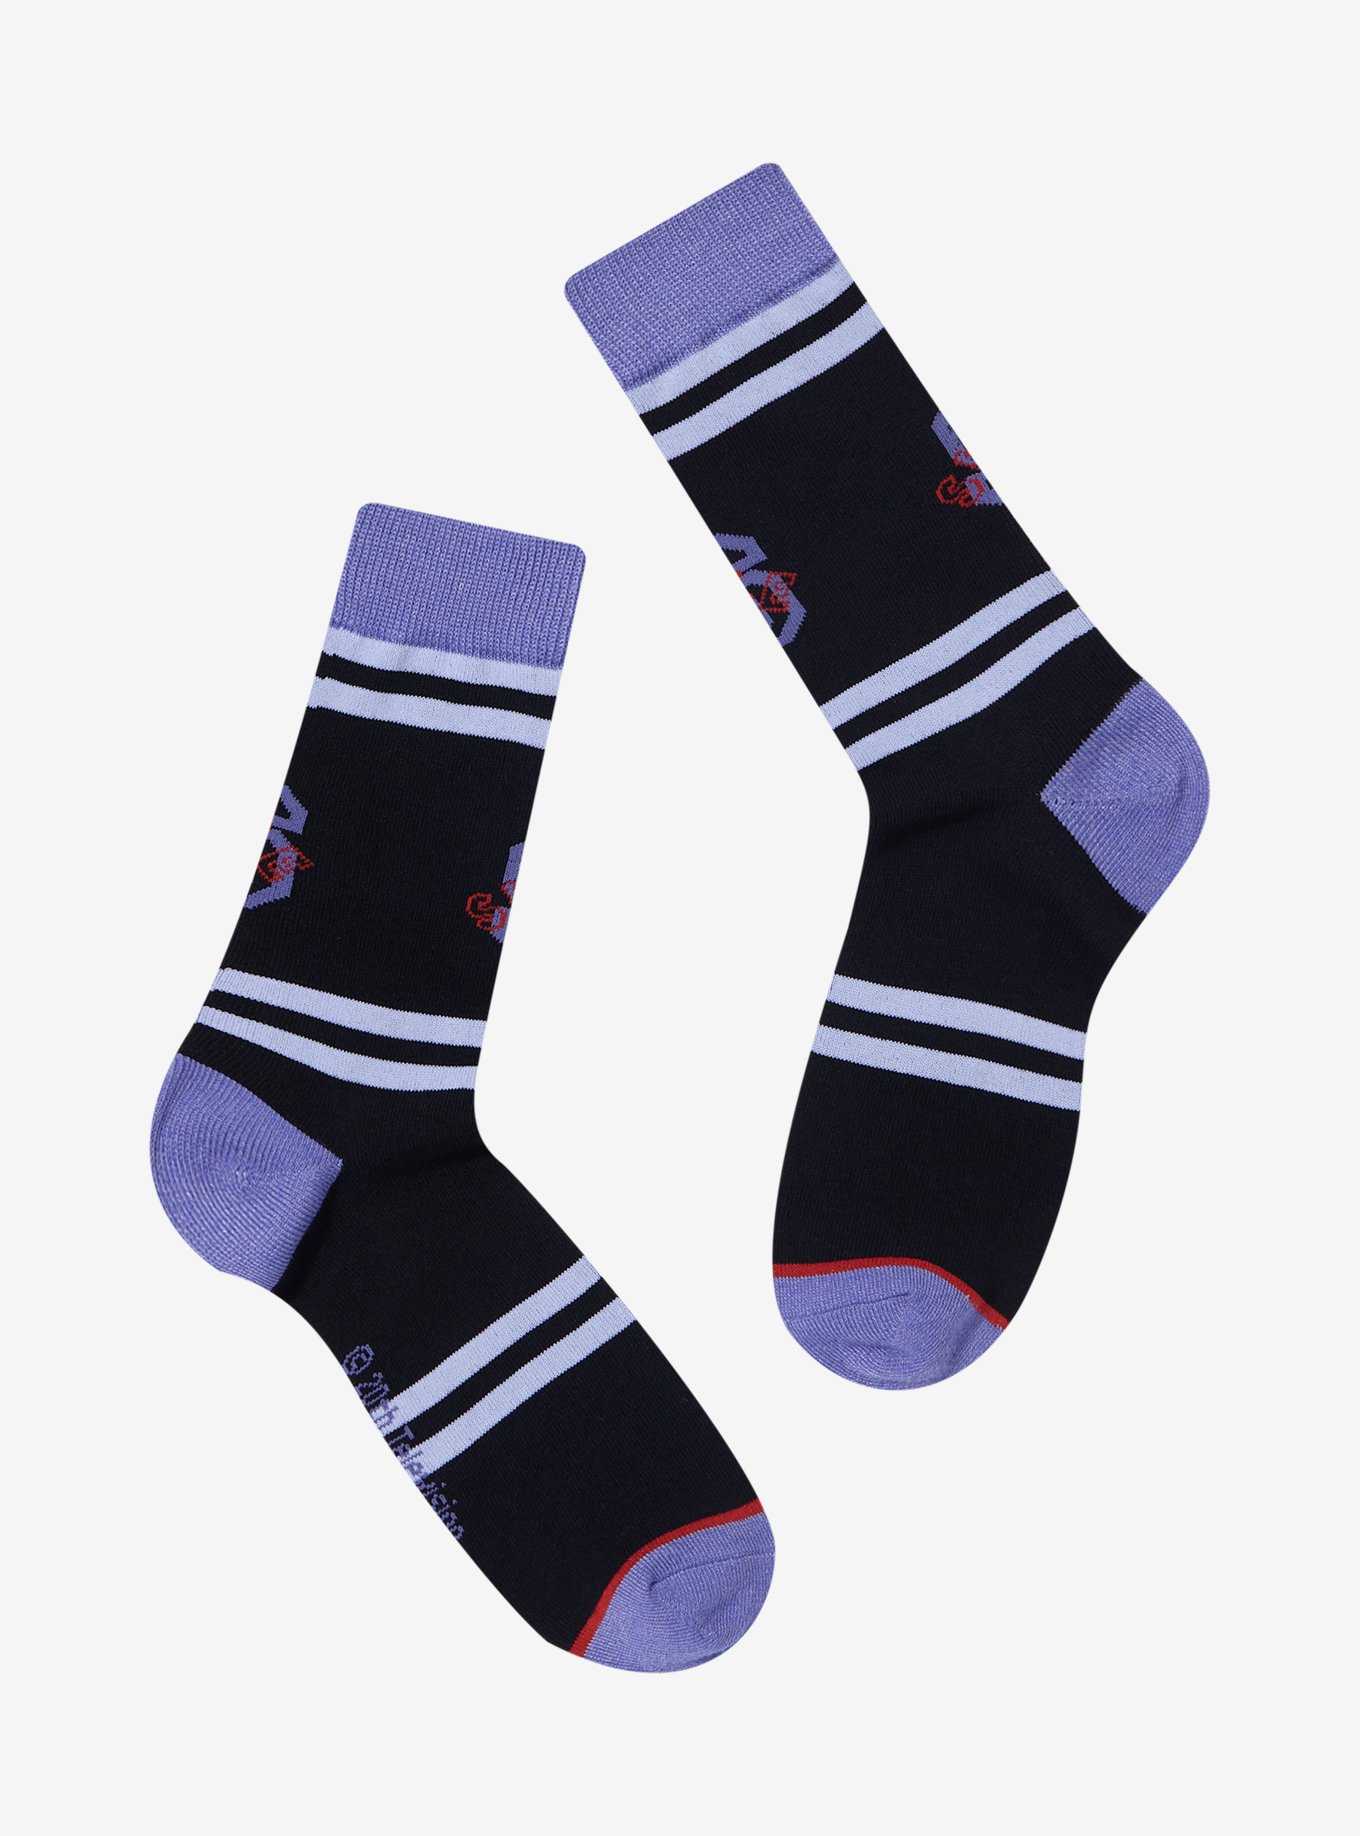 Busy Stripe Socks in Black